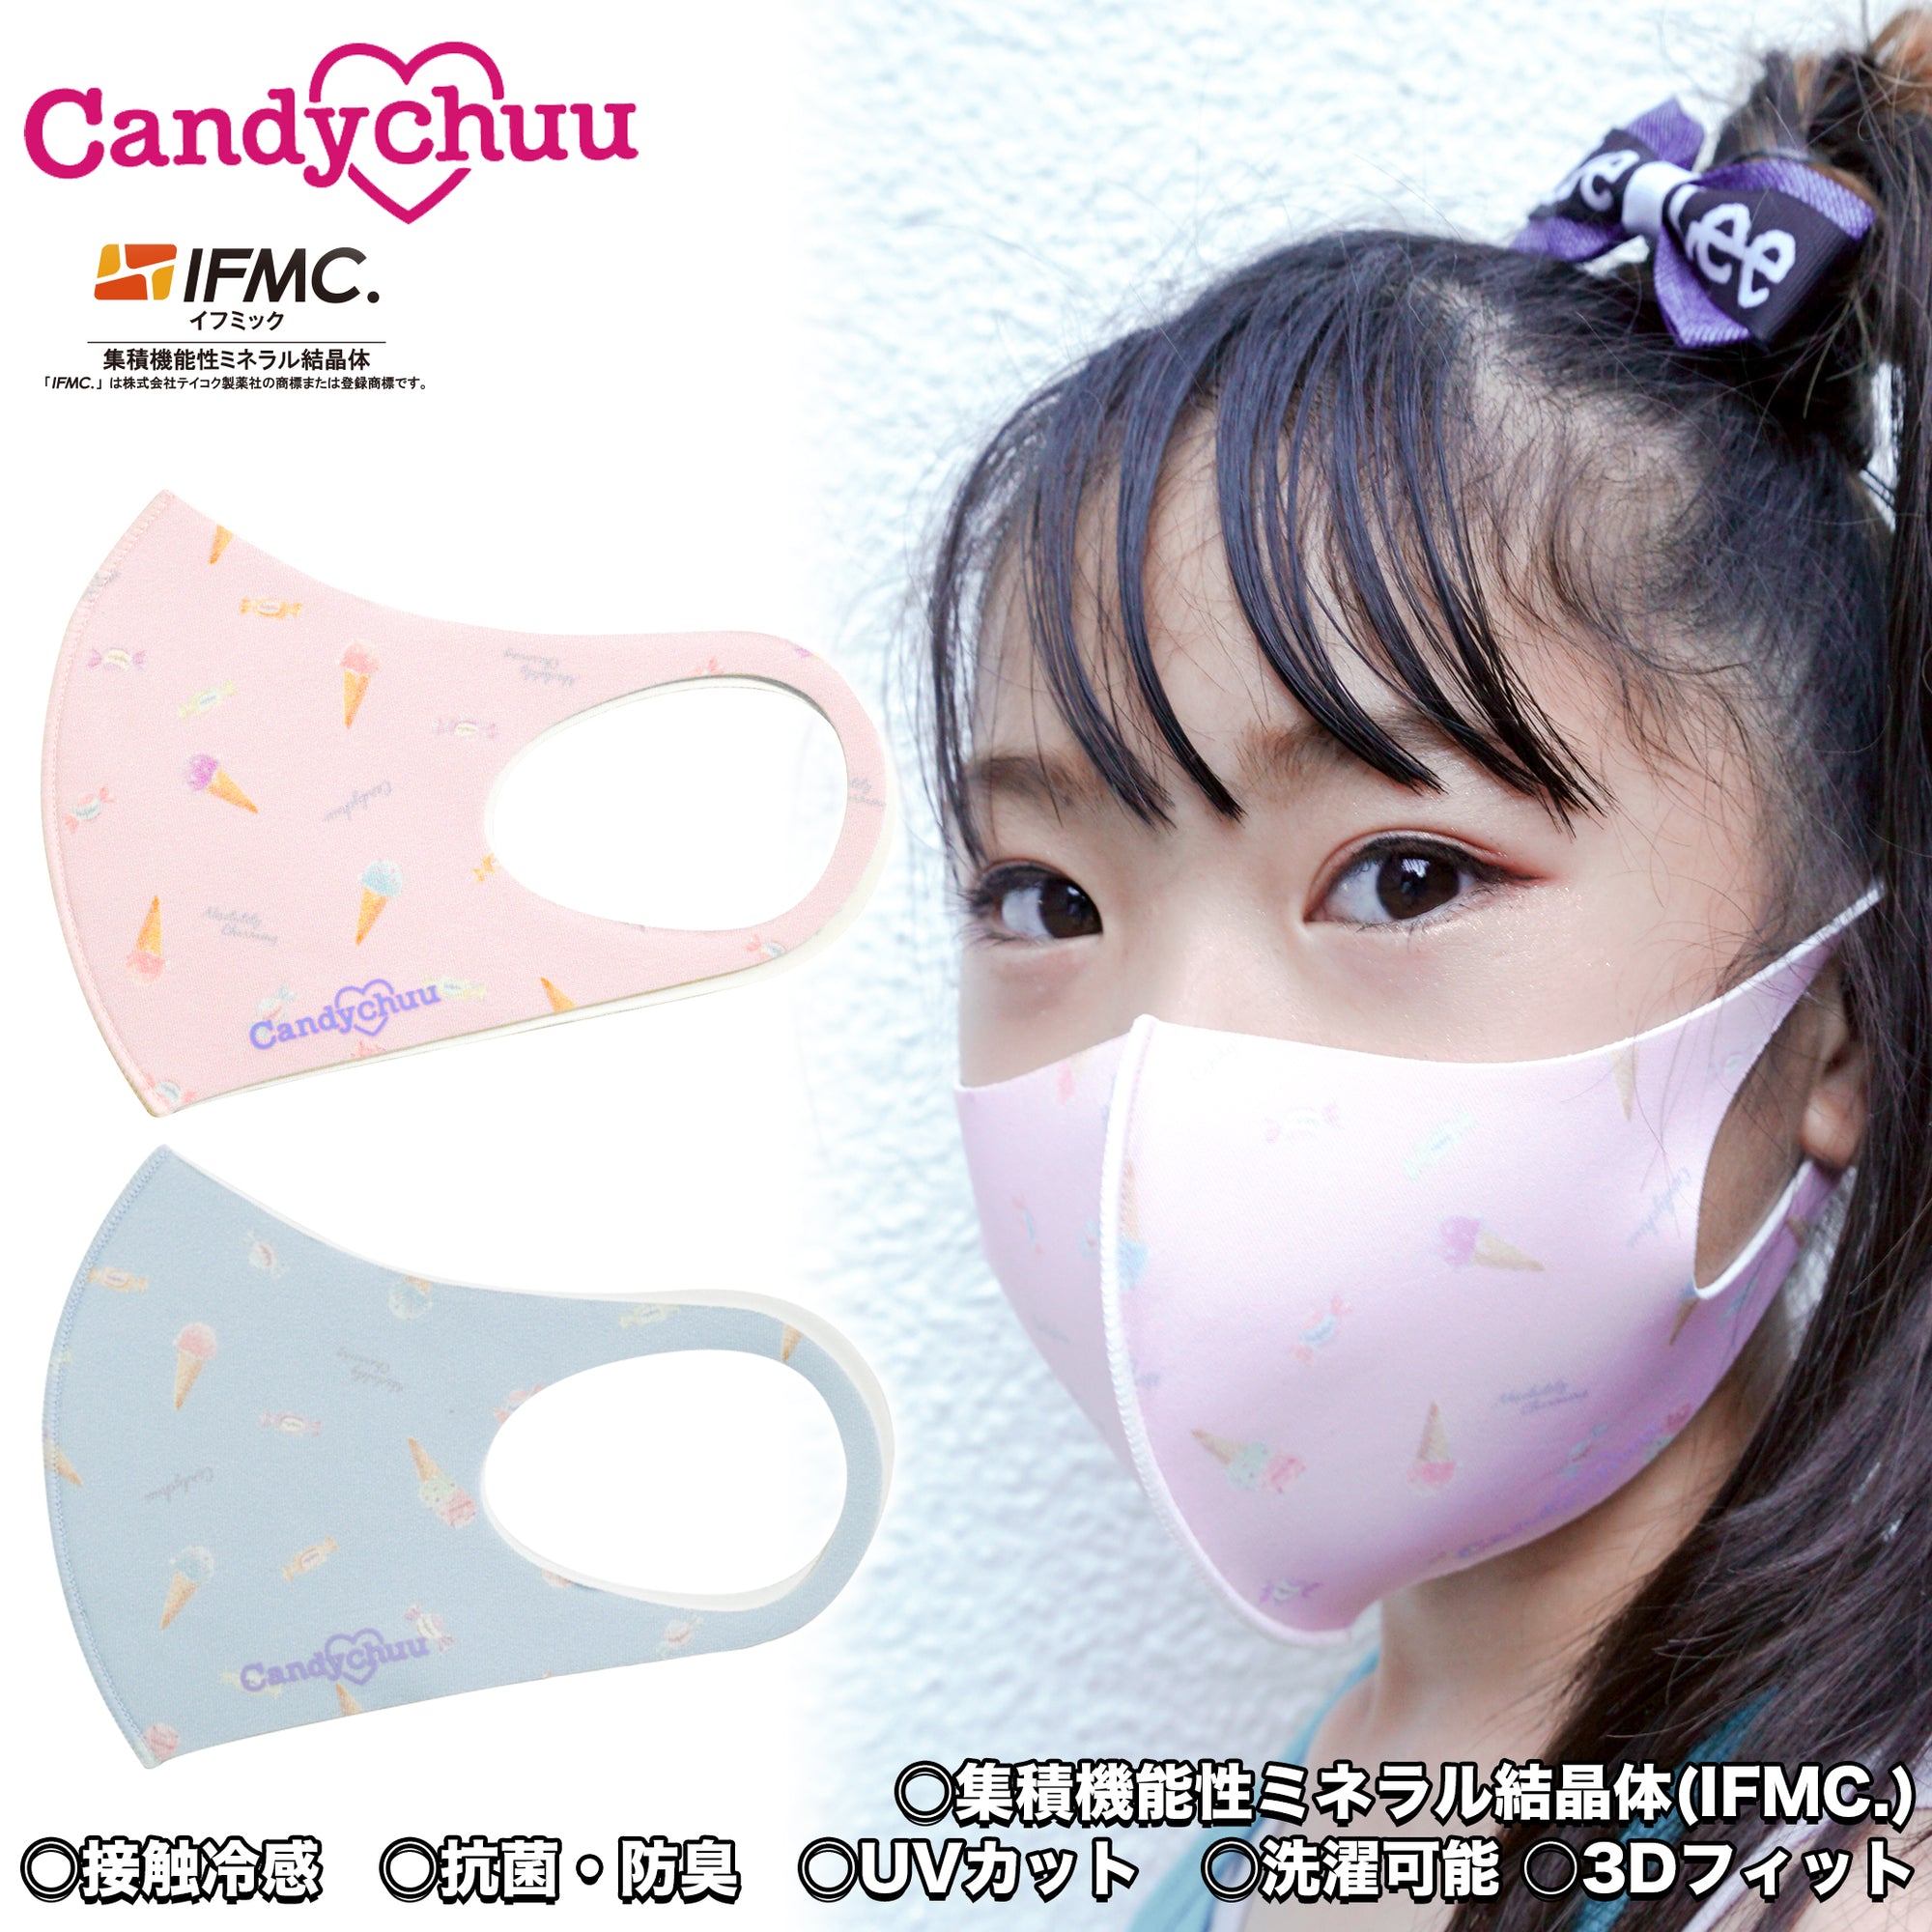 (40%オフ! セール商品)Candychuu  総柄 ロゴ マスク (200585)